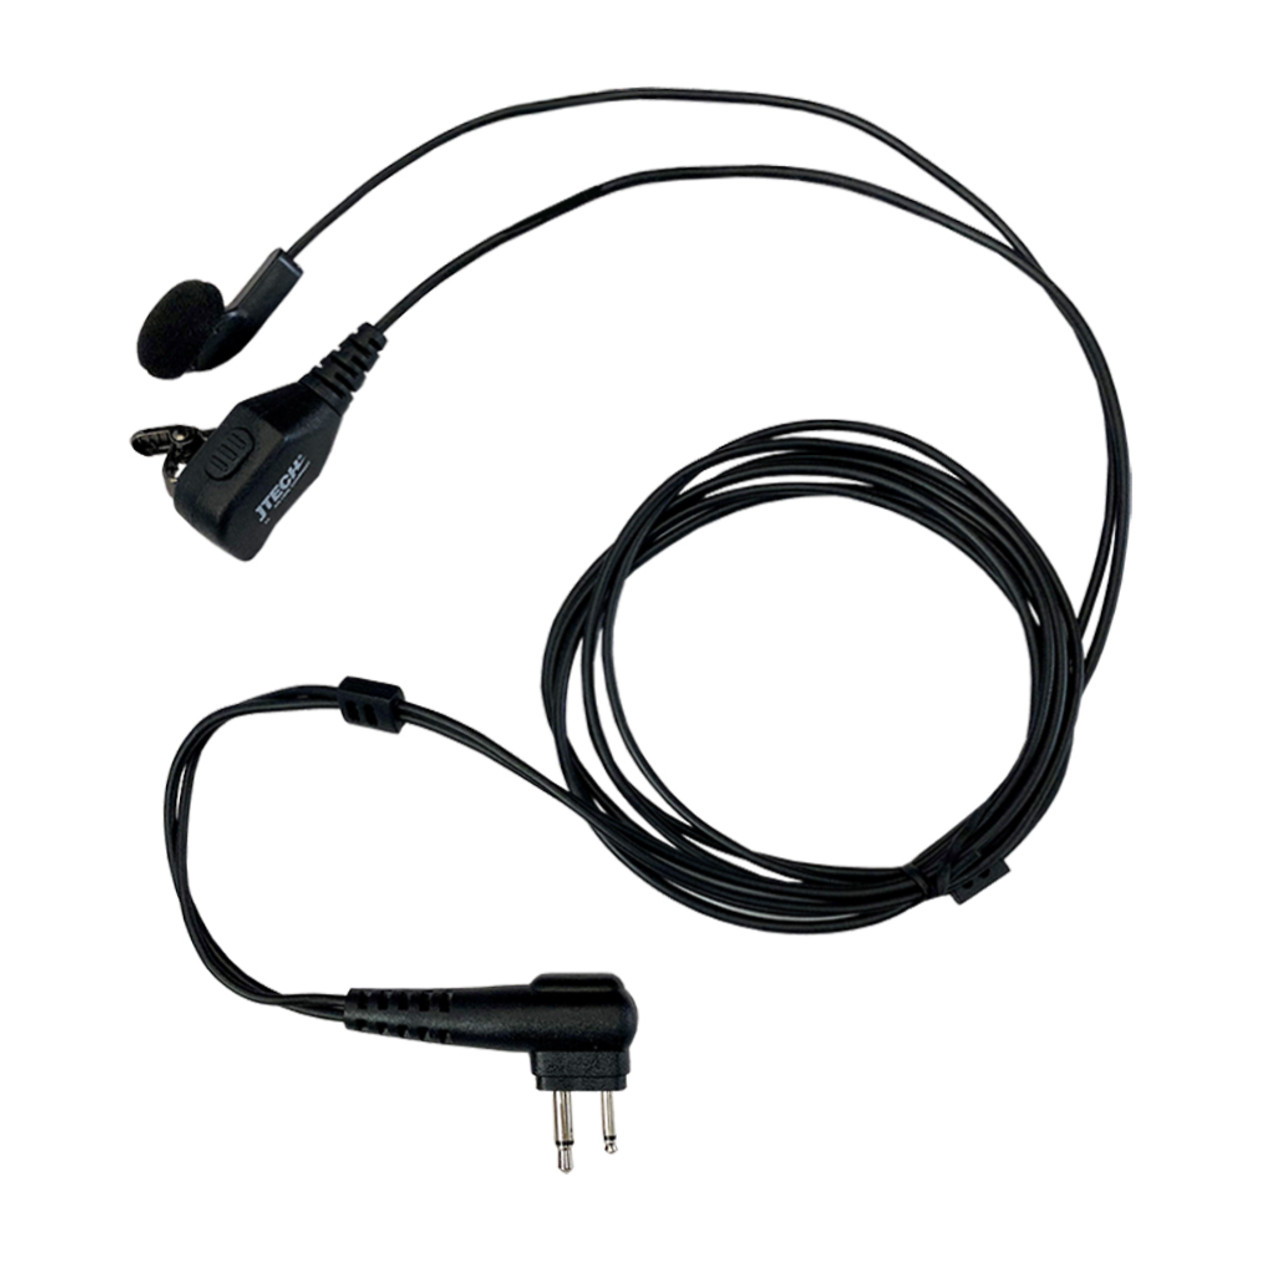 commountain Single Wire Earhook Earpiece for Motorola Radios DLR1020 DLR1060 DTR410 DTR550 DTR600 DTR650 DTR700 RMD2070D RMM2050 RMU2040 RMU2080 RMU2080D RMV2080 Reinforced Cable G Shape Ear Hook 